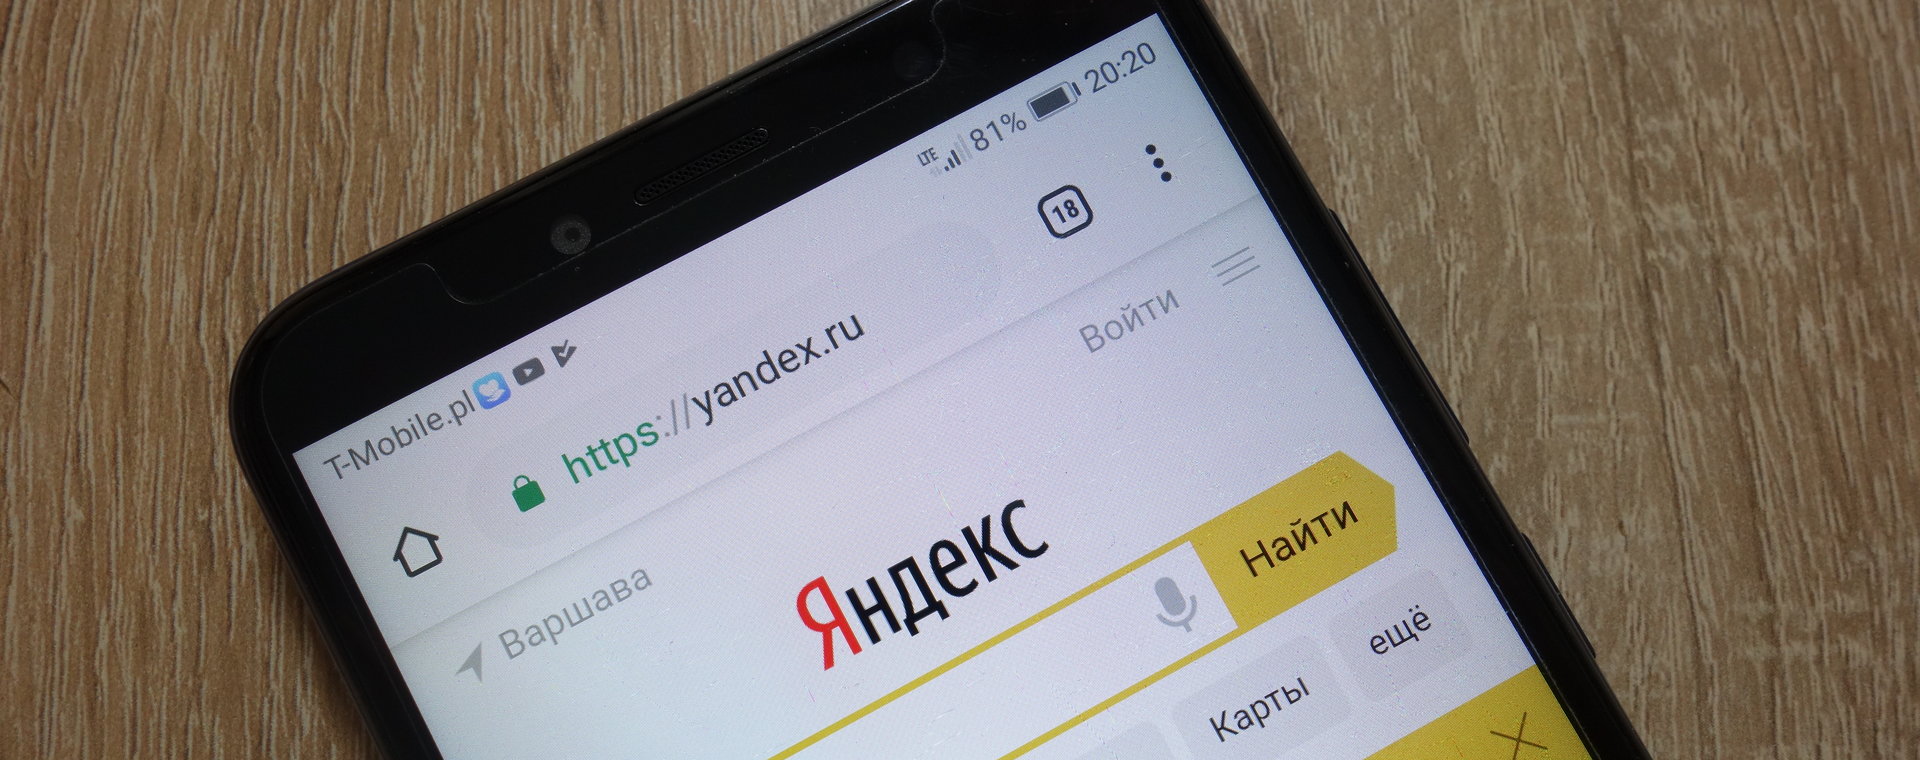 Wyszukiwarka Yandex